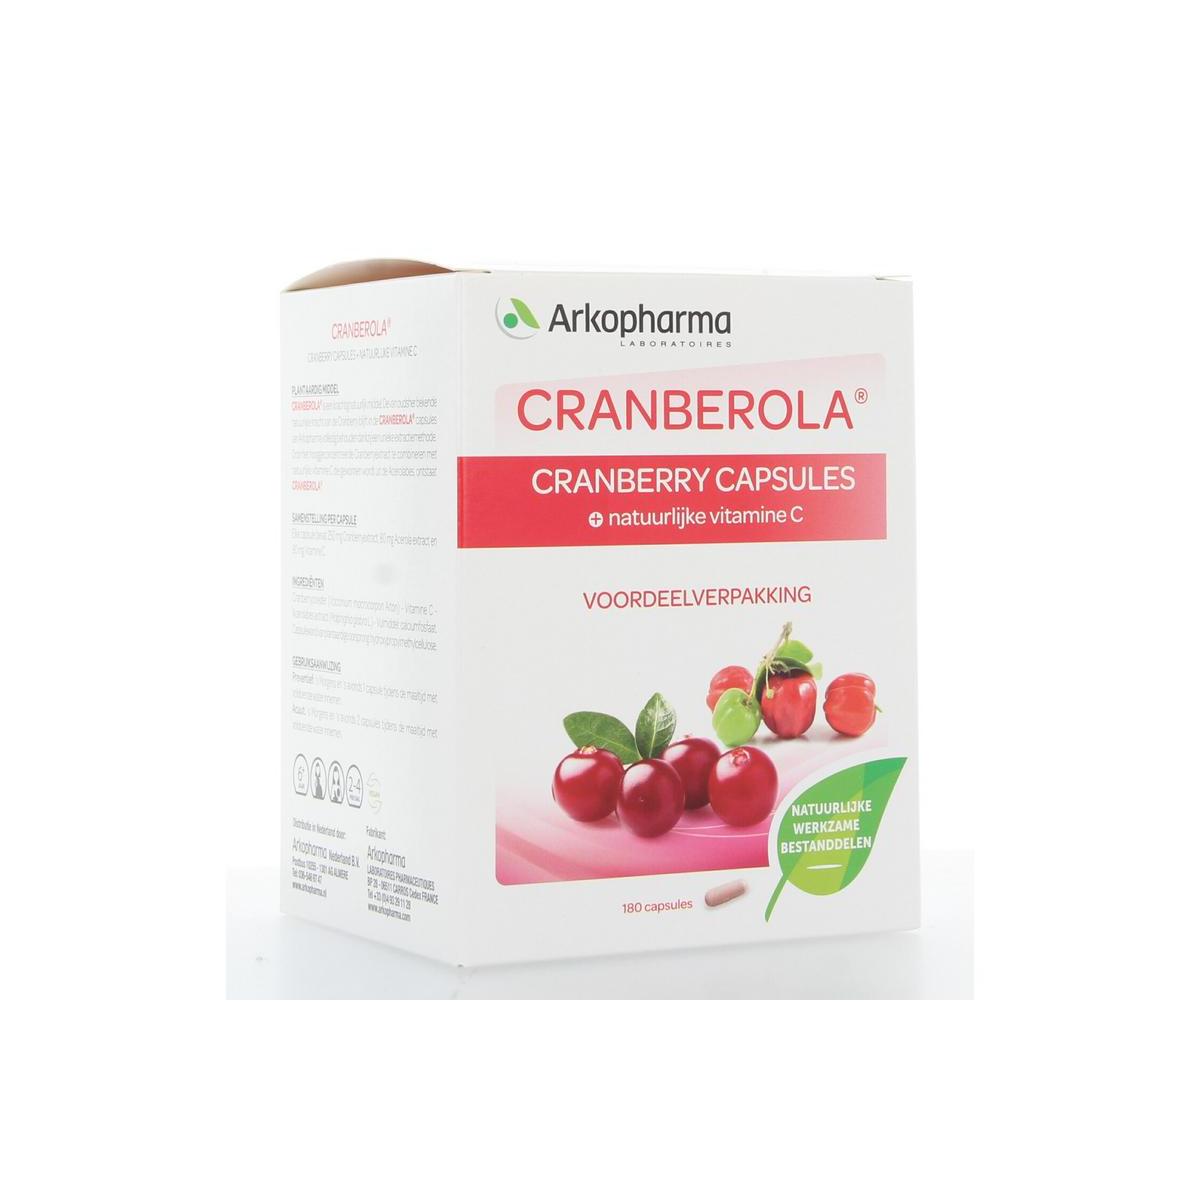 Cranberry & vitamine C